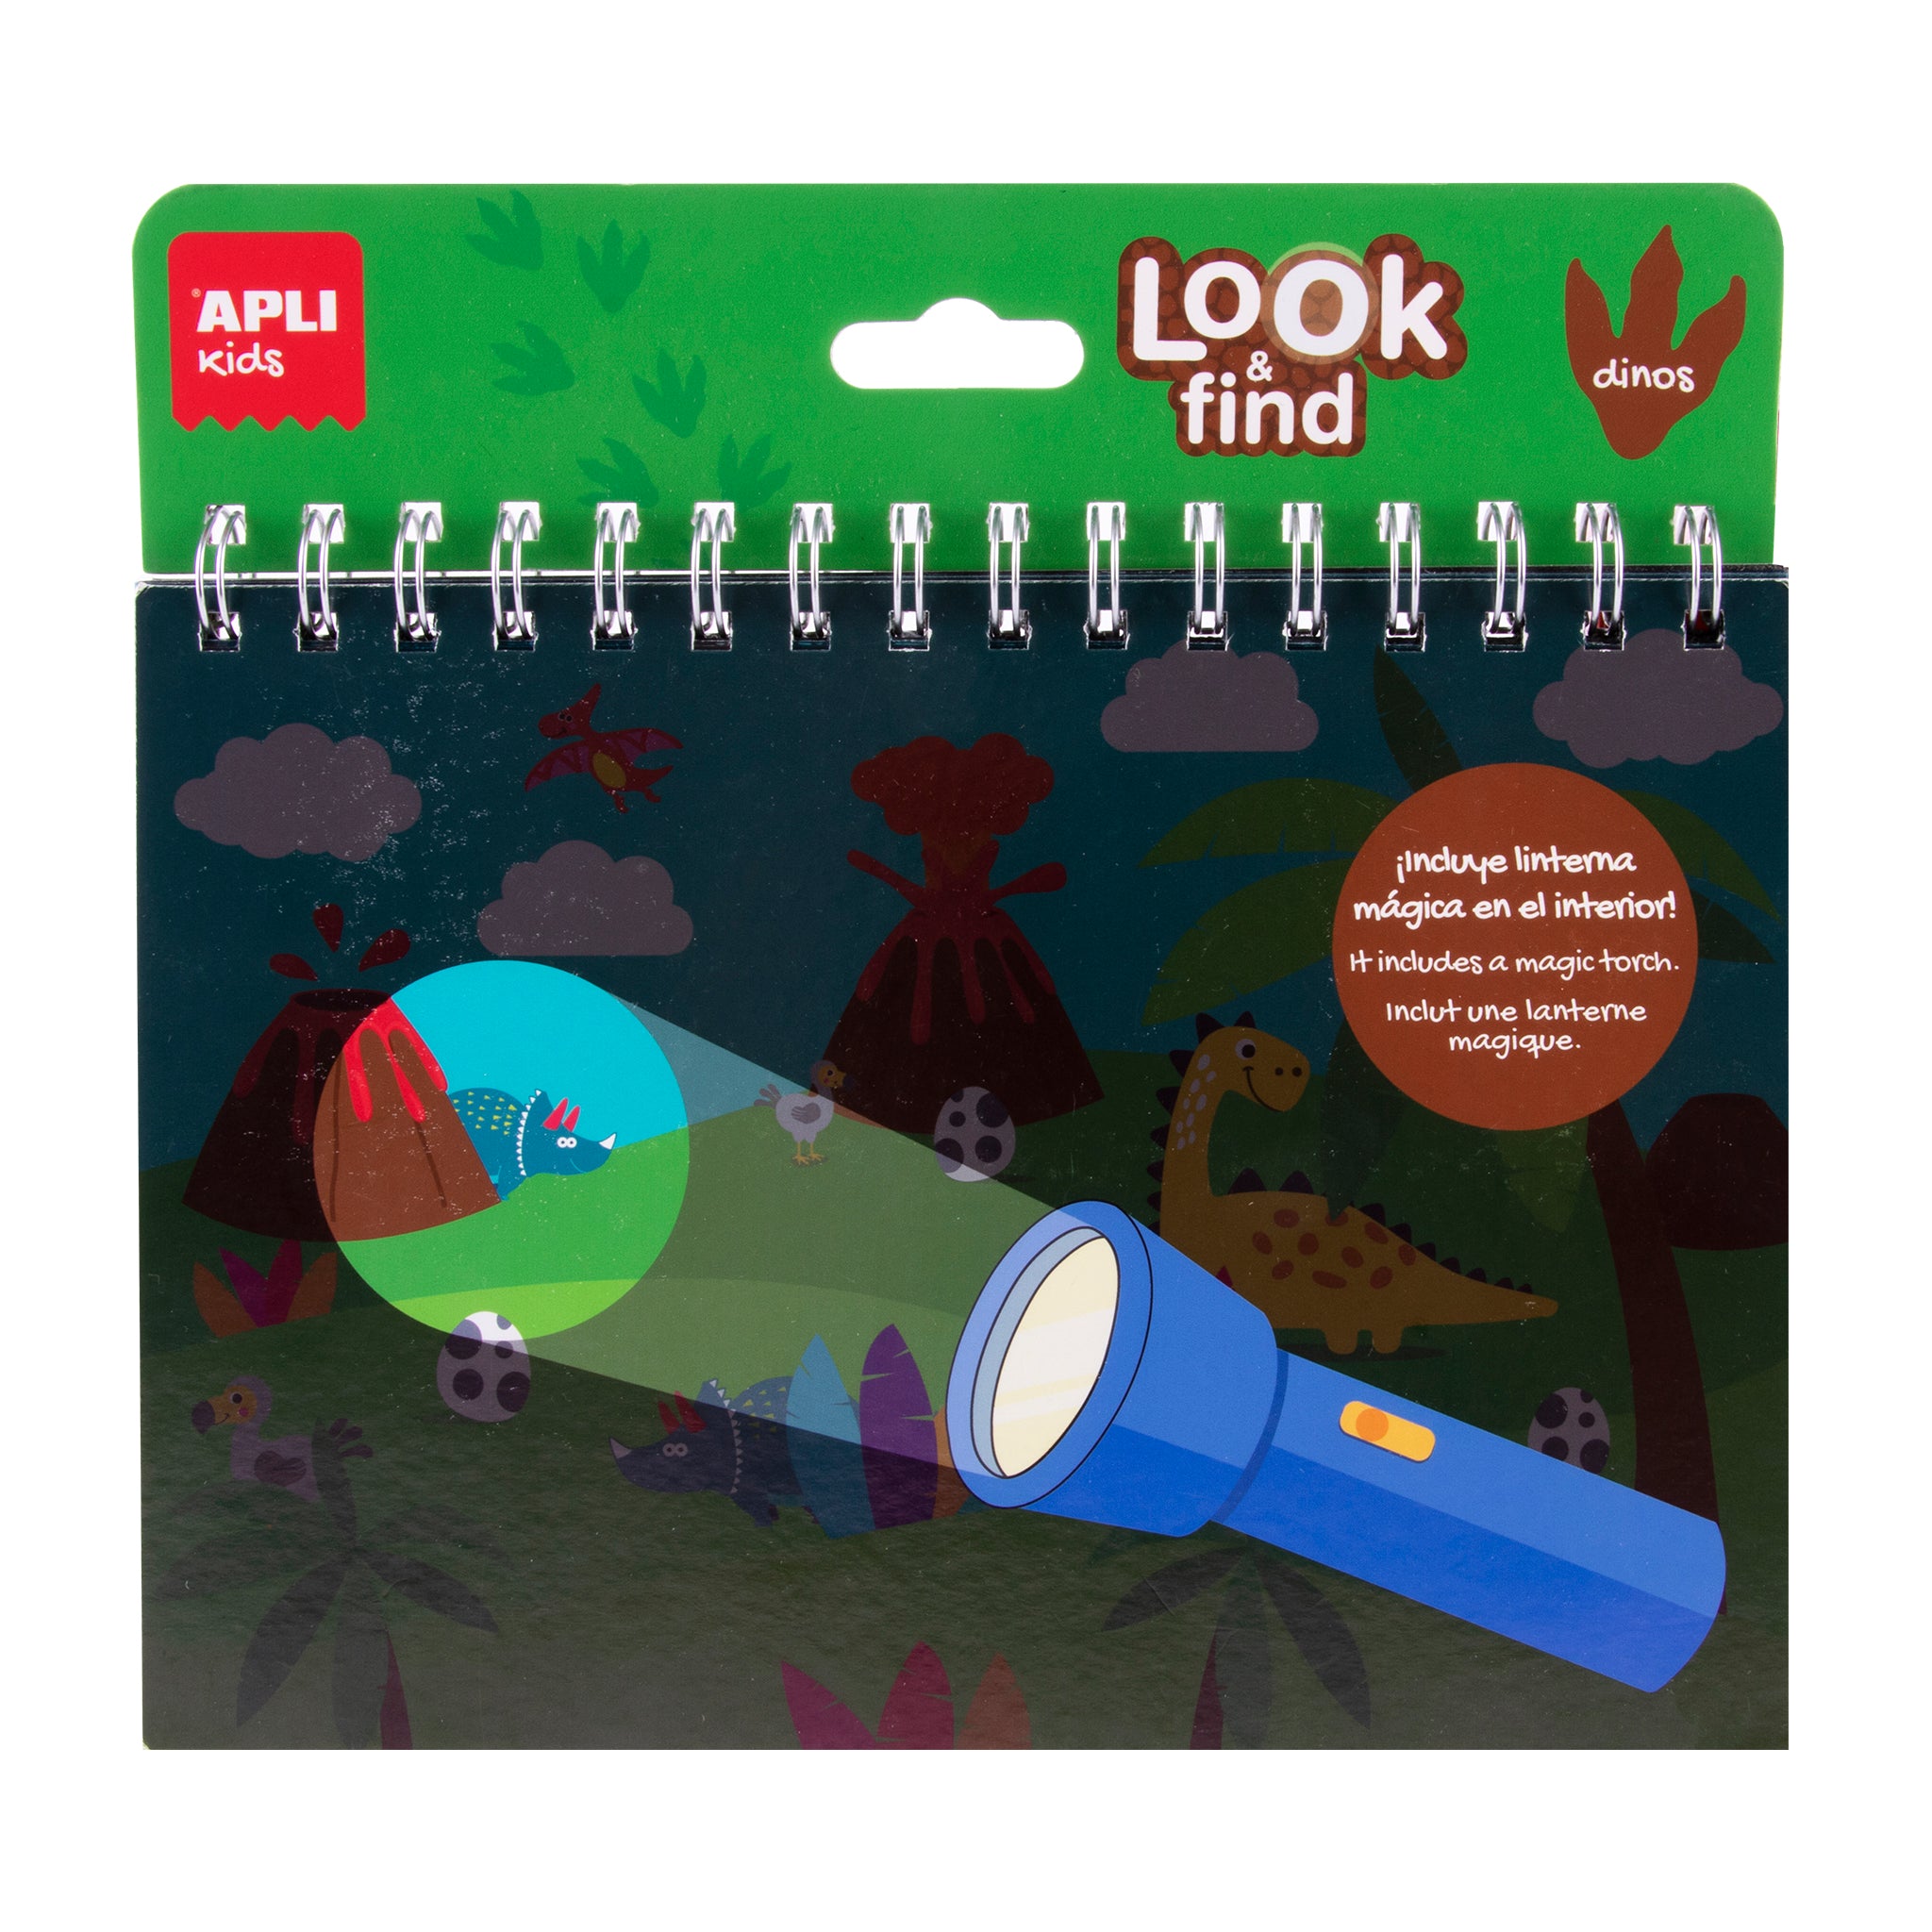 Apli Kids: un folleto con una mirada mágica y encontrar una linterna